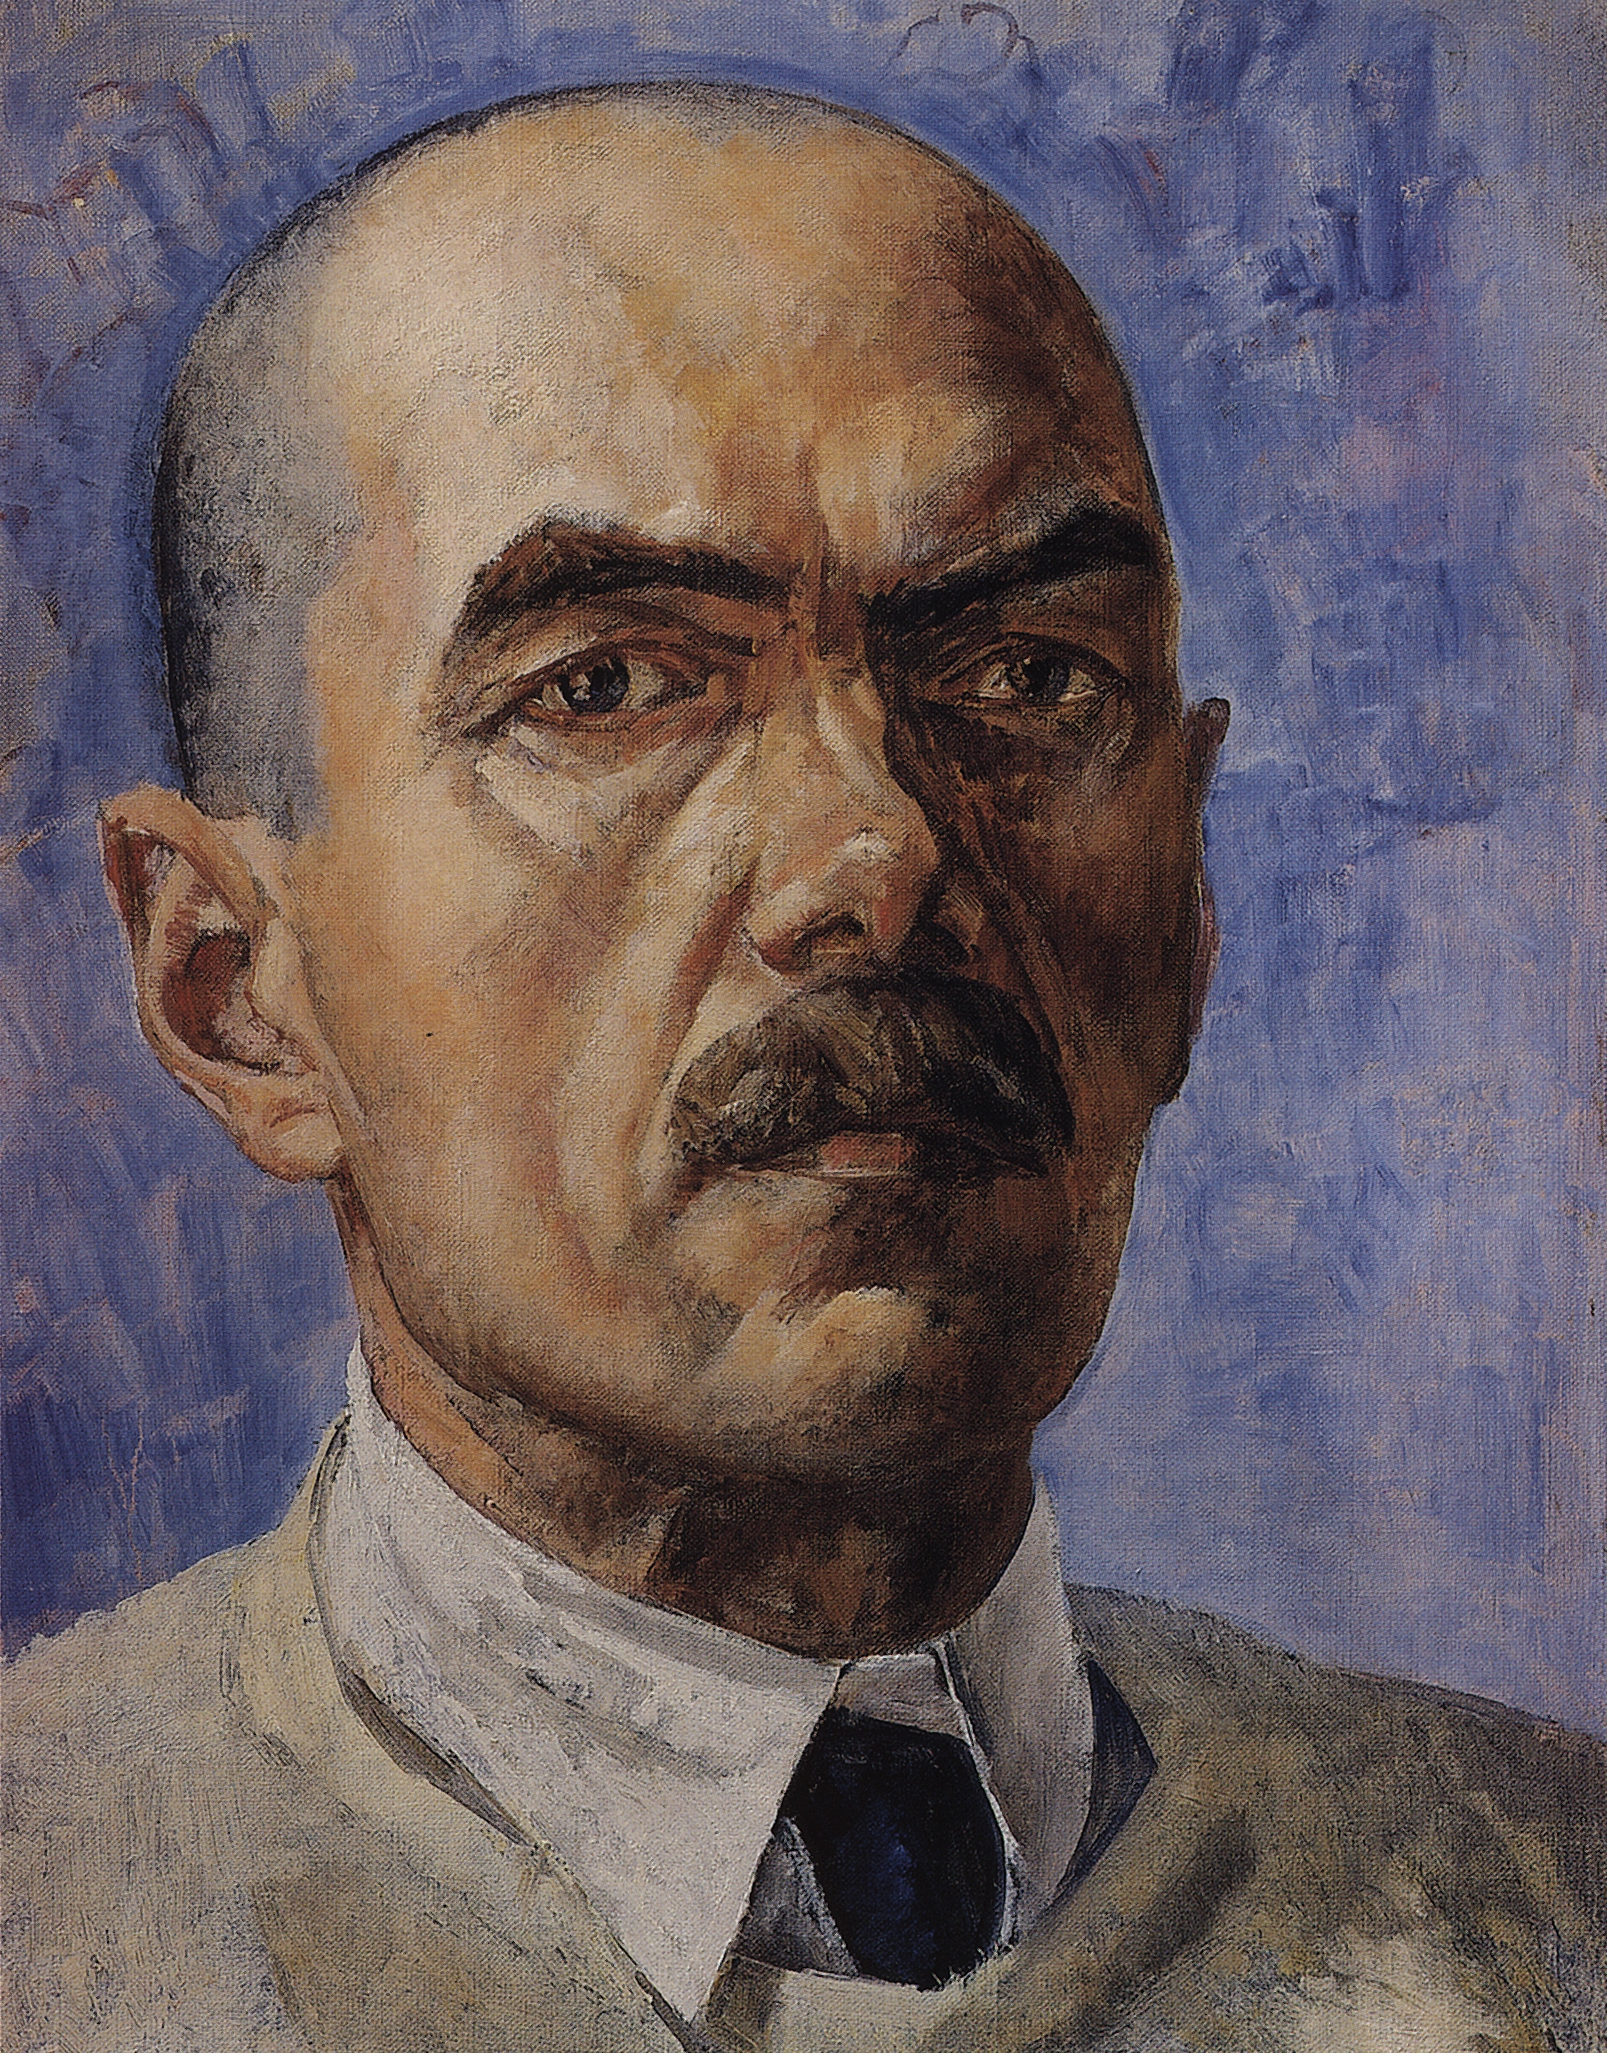 Петров-Водкин. Автопортрет. 1929